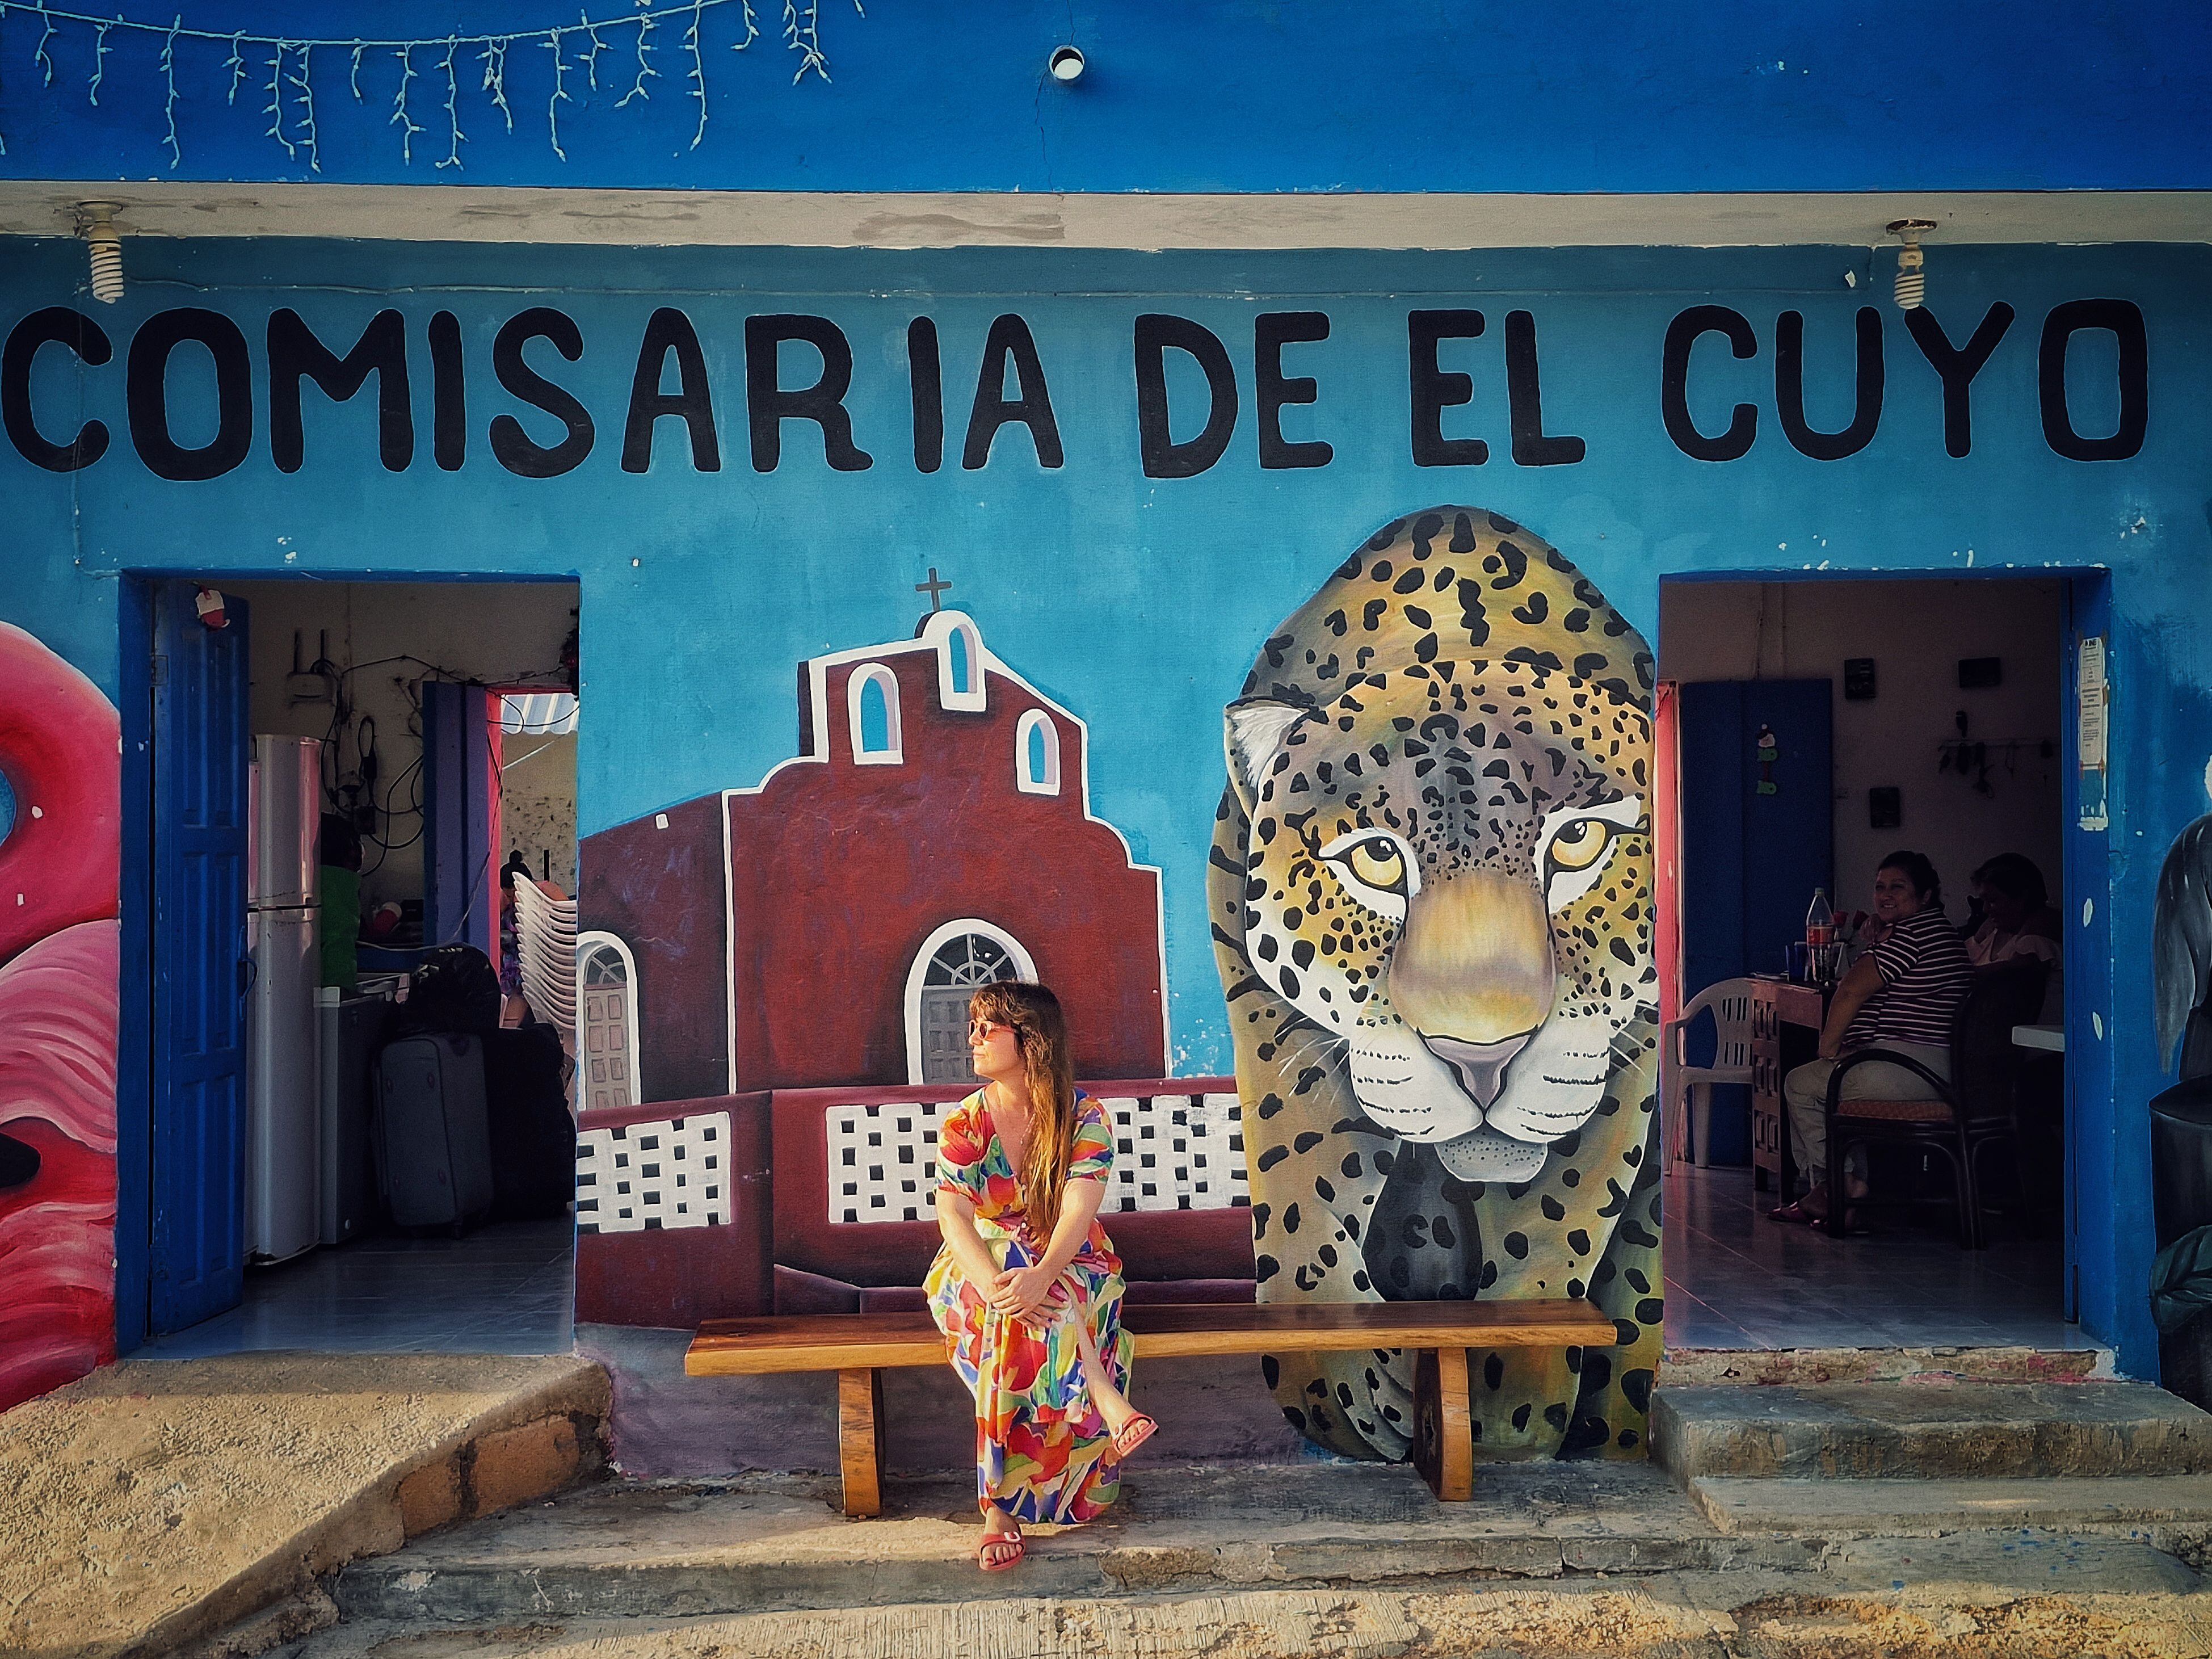 El colorido exterior de la comisaría El Cuyo (México).